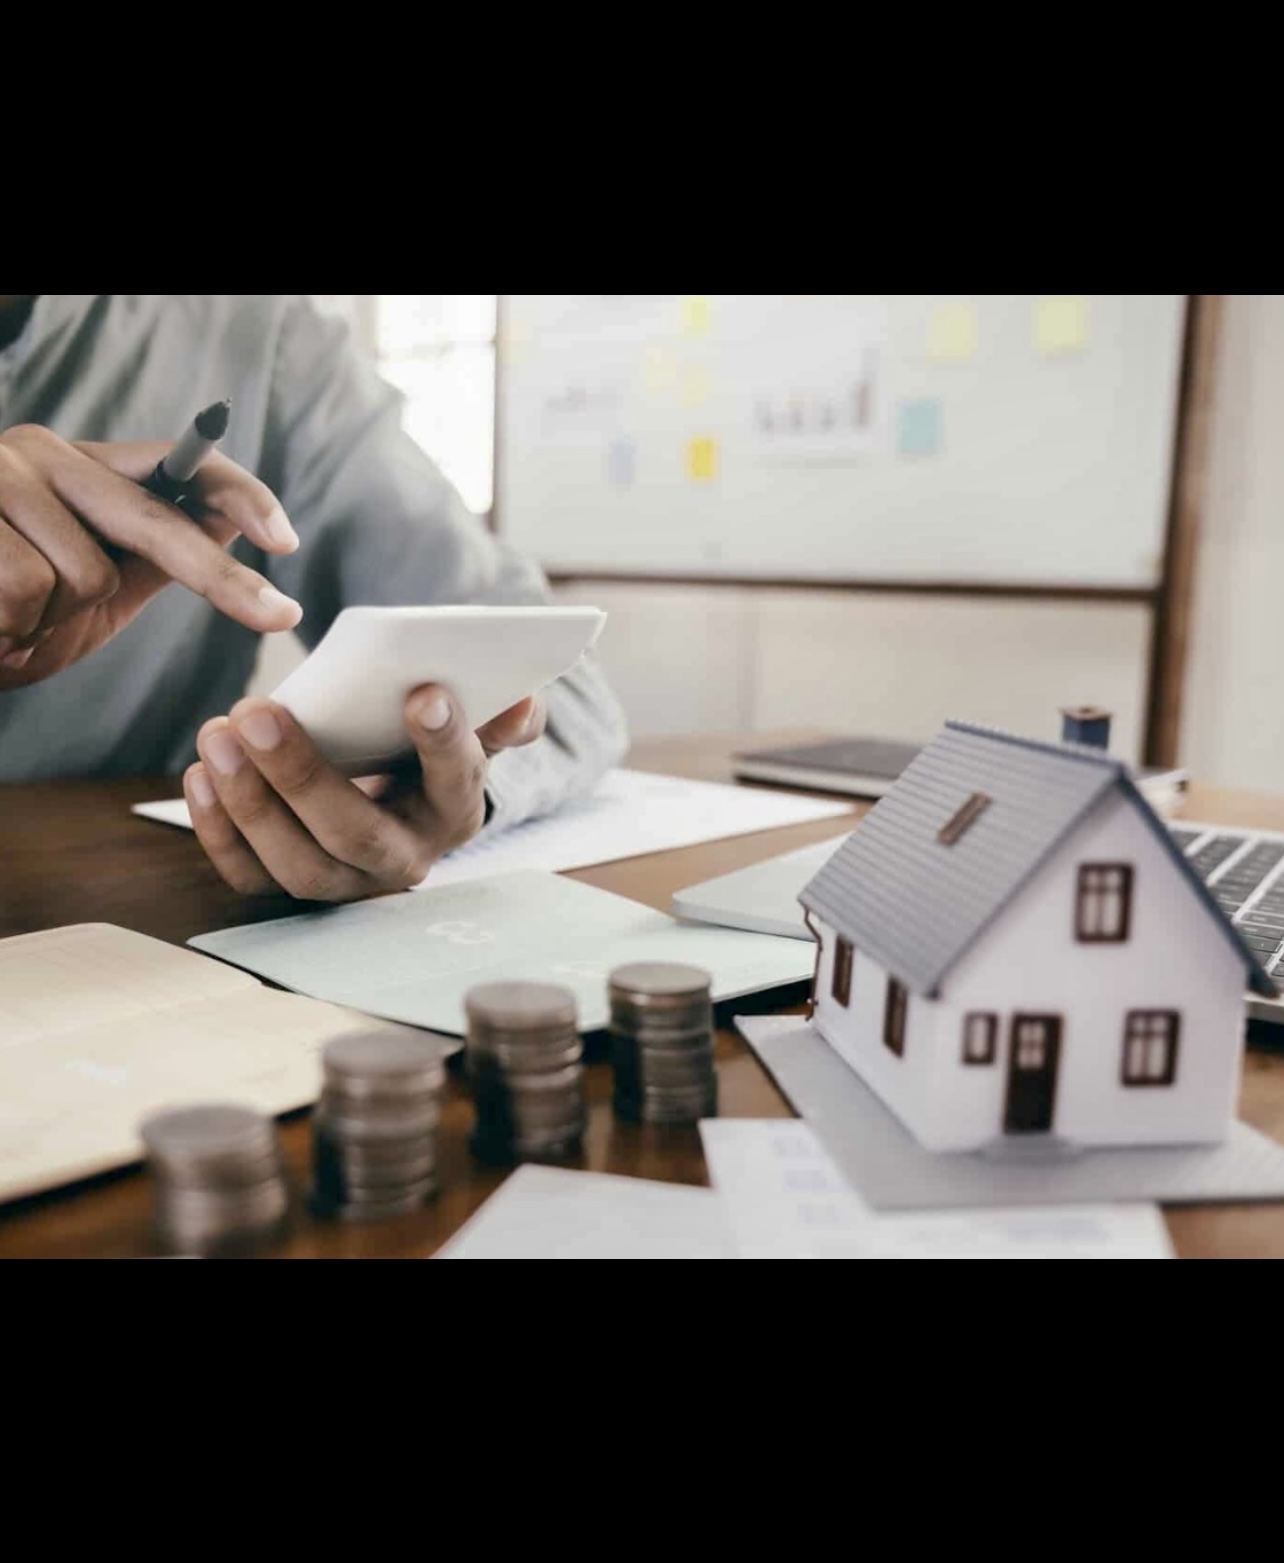 Un homme utilisant son téléphone assis à une table avec de l’argent et un modèle de maison, explorant les options de consolidation de dettes par l’hypothèque.